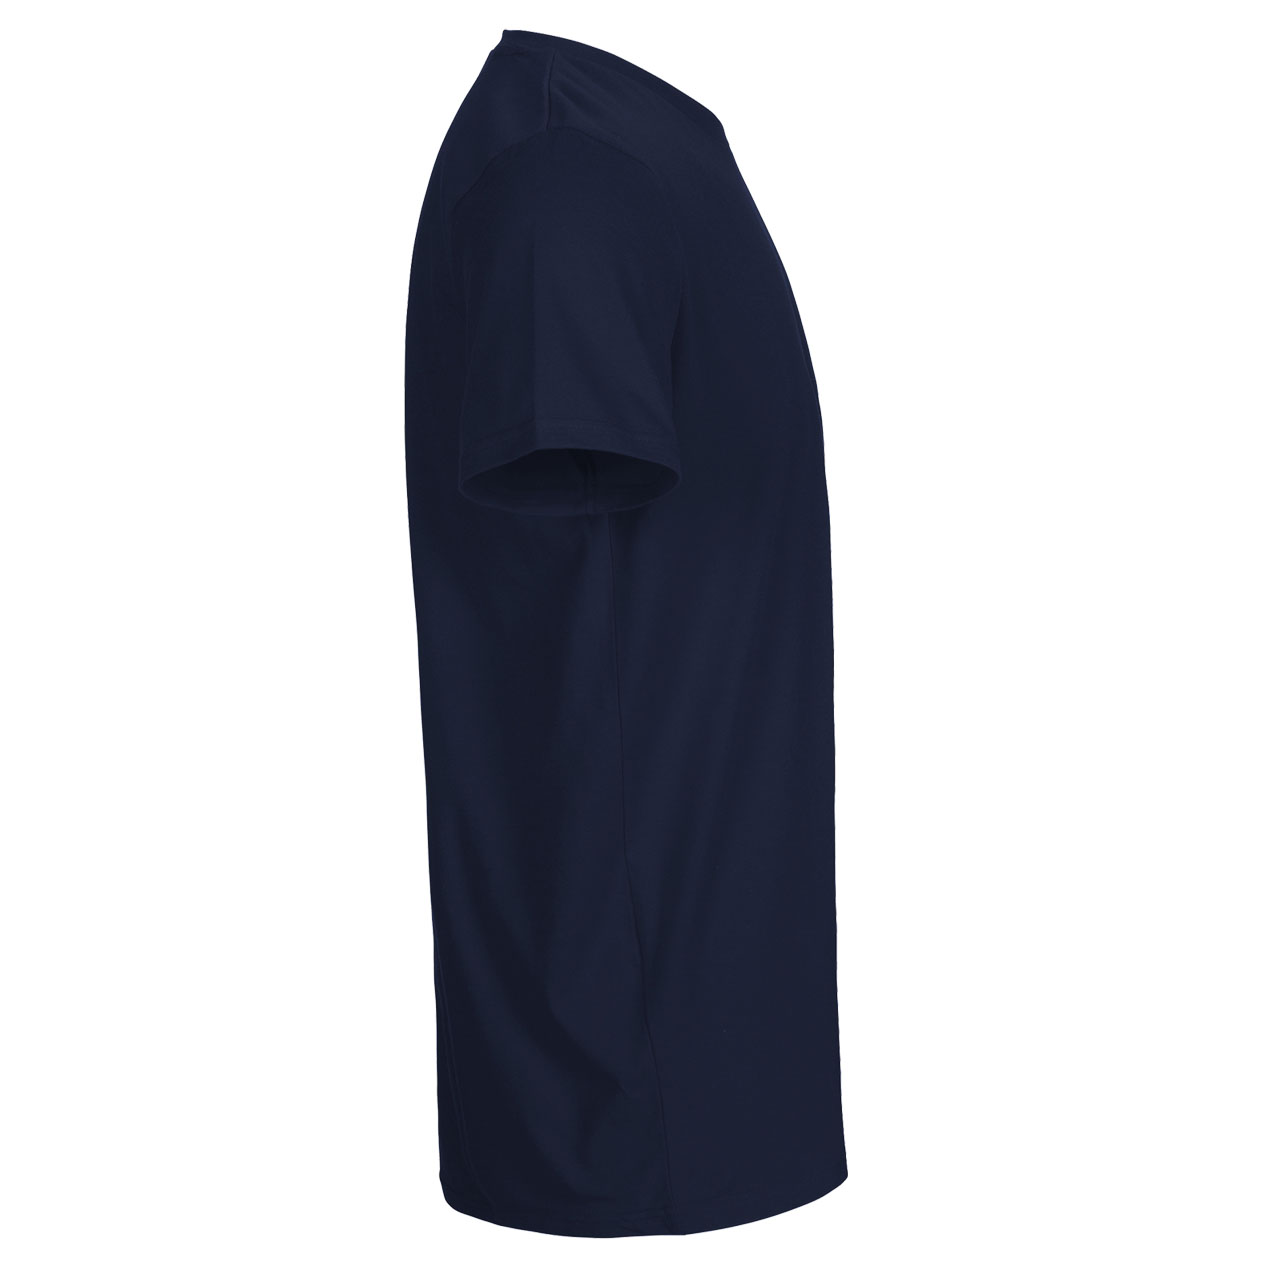 Neutral® Mens Fit T-Shirt - Bio-Baumwolle Navy XL Navy